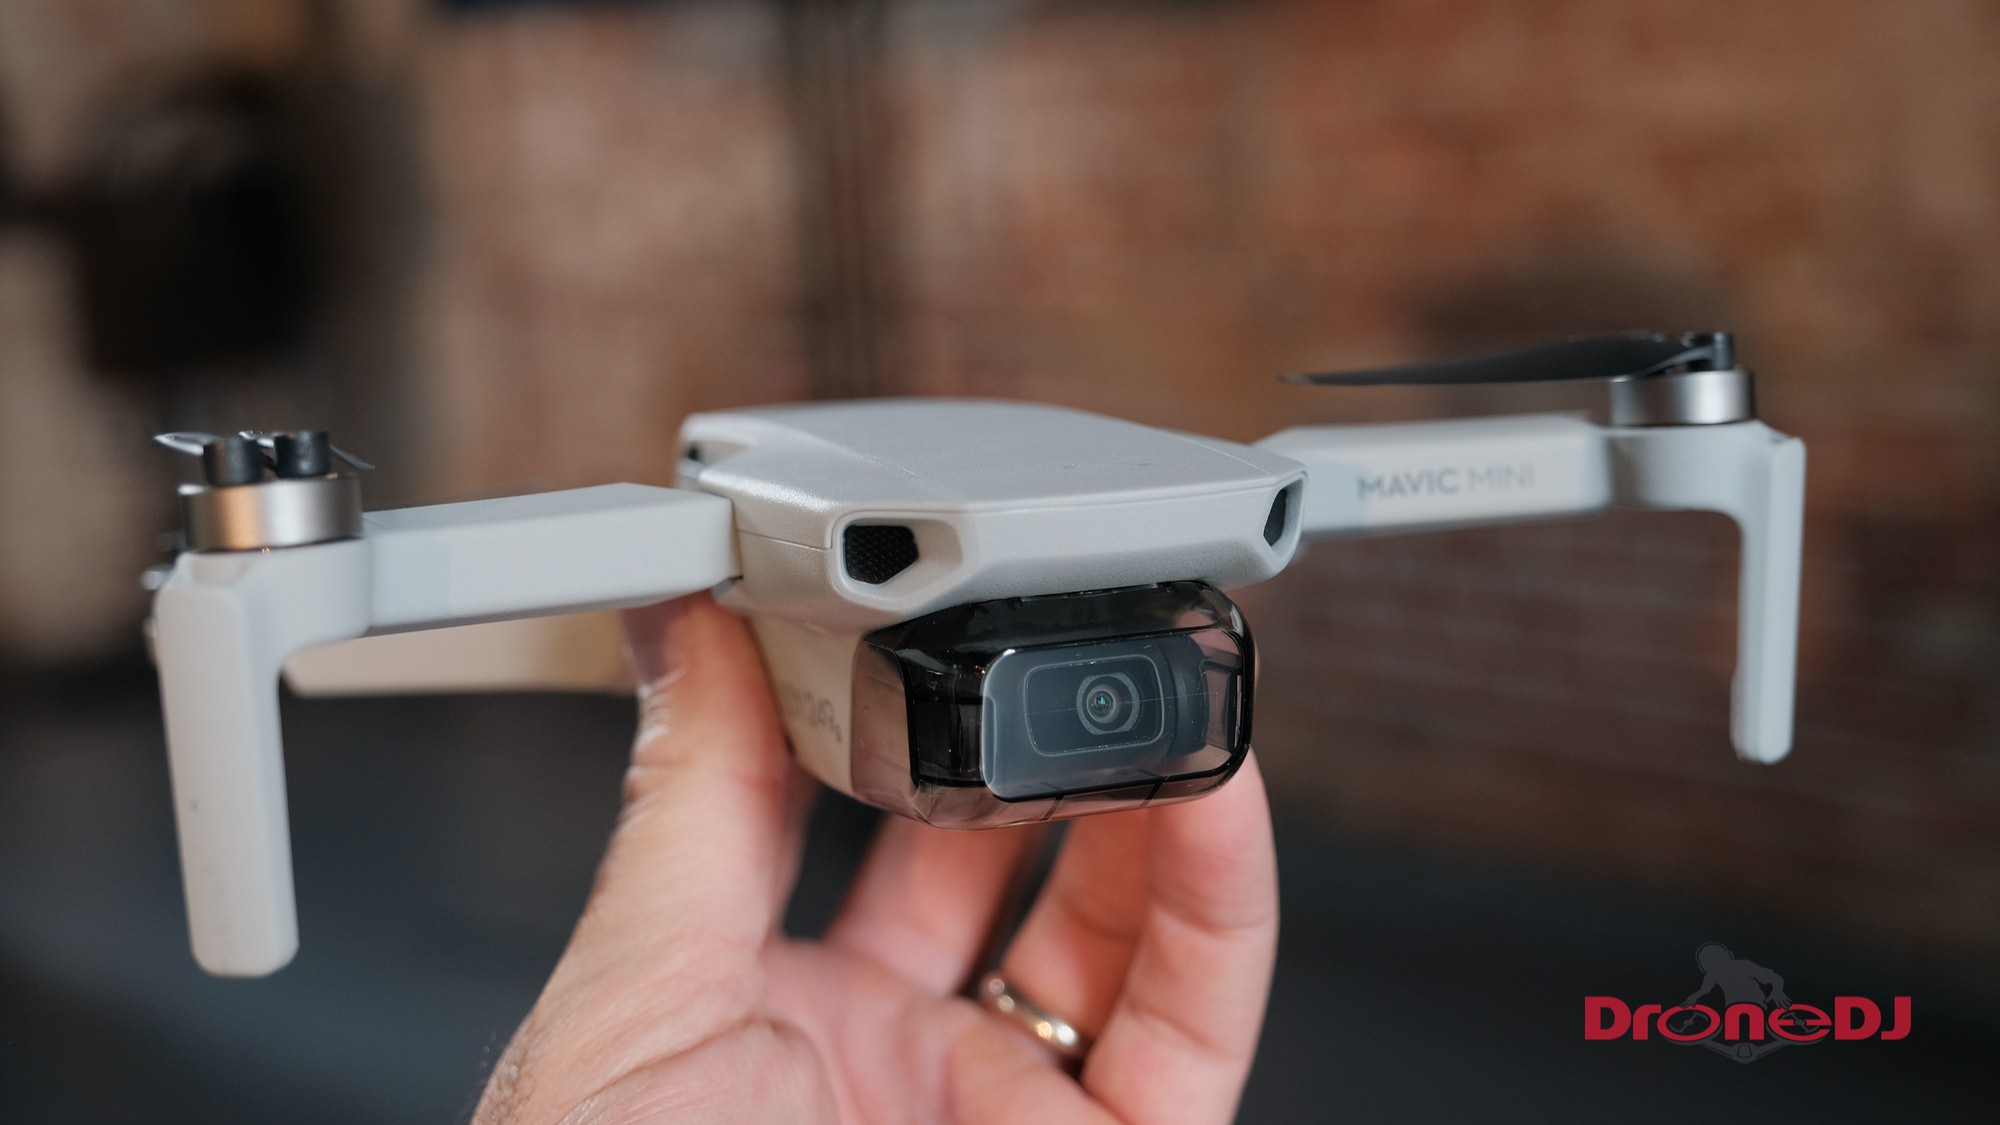 drone camera small size